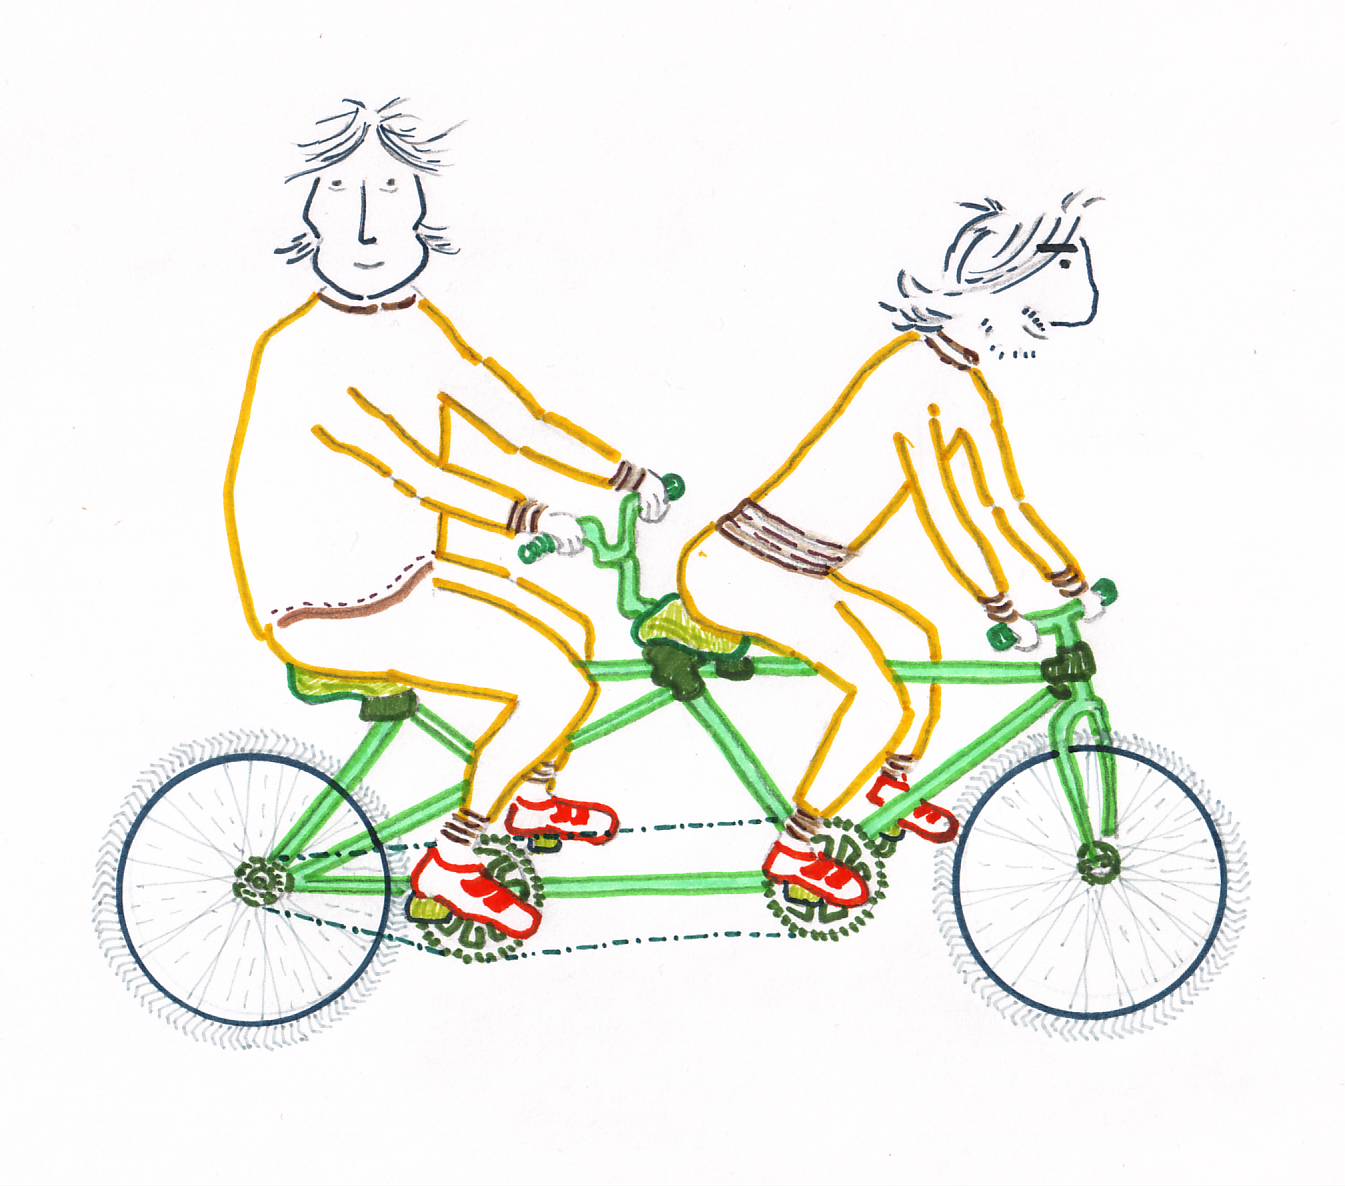 Tándem (bicicleta) - Wikipedia, la enciclopedia libre